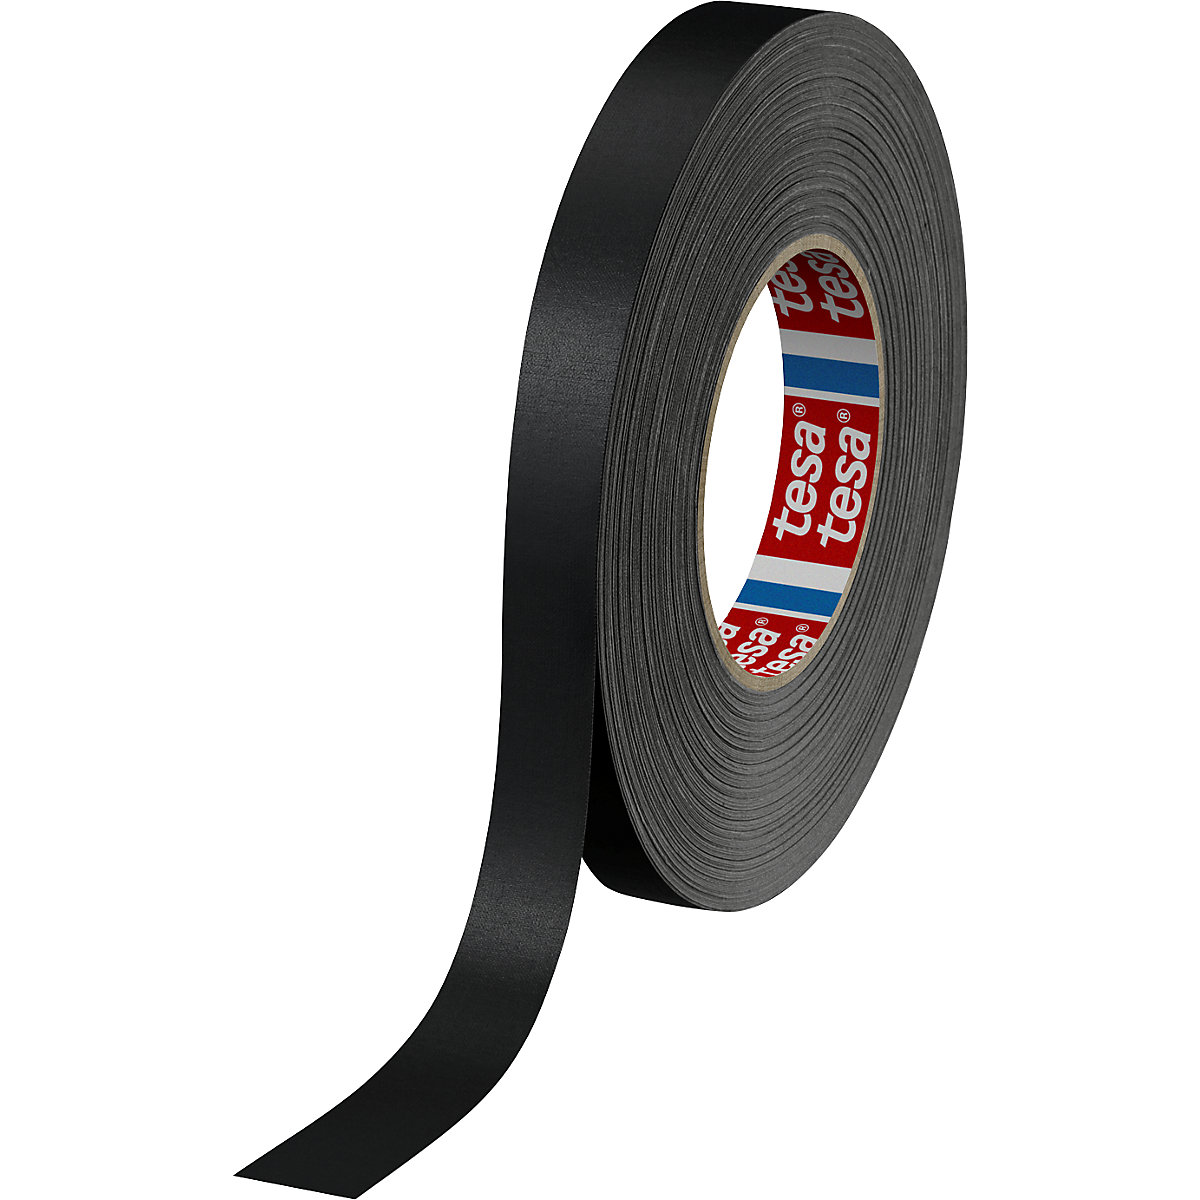 Traka od tkanine – tesa, tesaband® 4651 Premium, pak. 48 rola, u crnoj boji, širina trake 19 mm-1